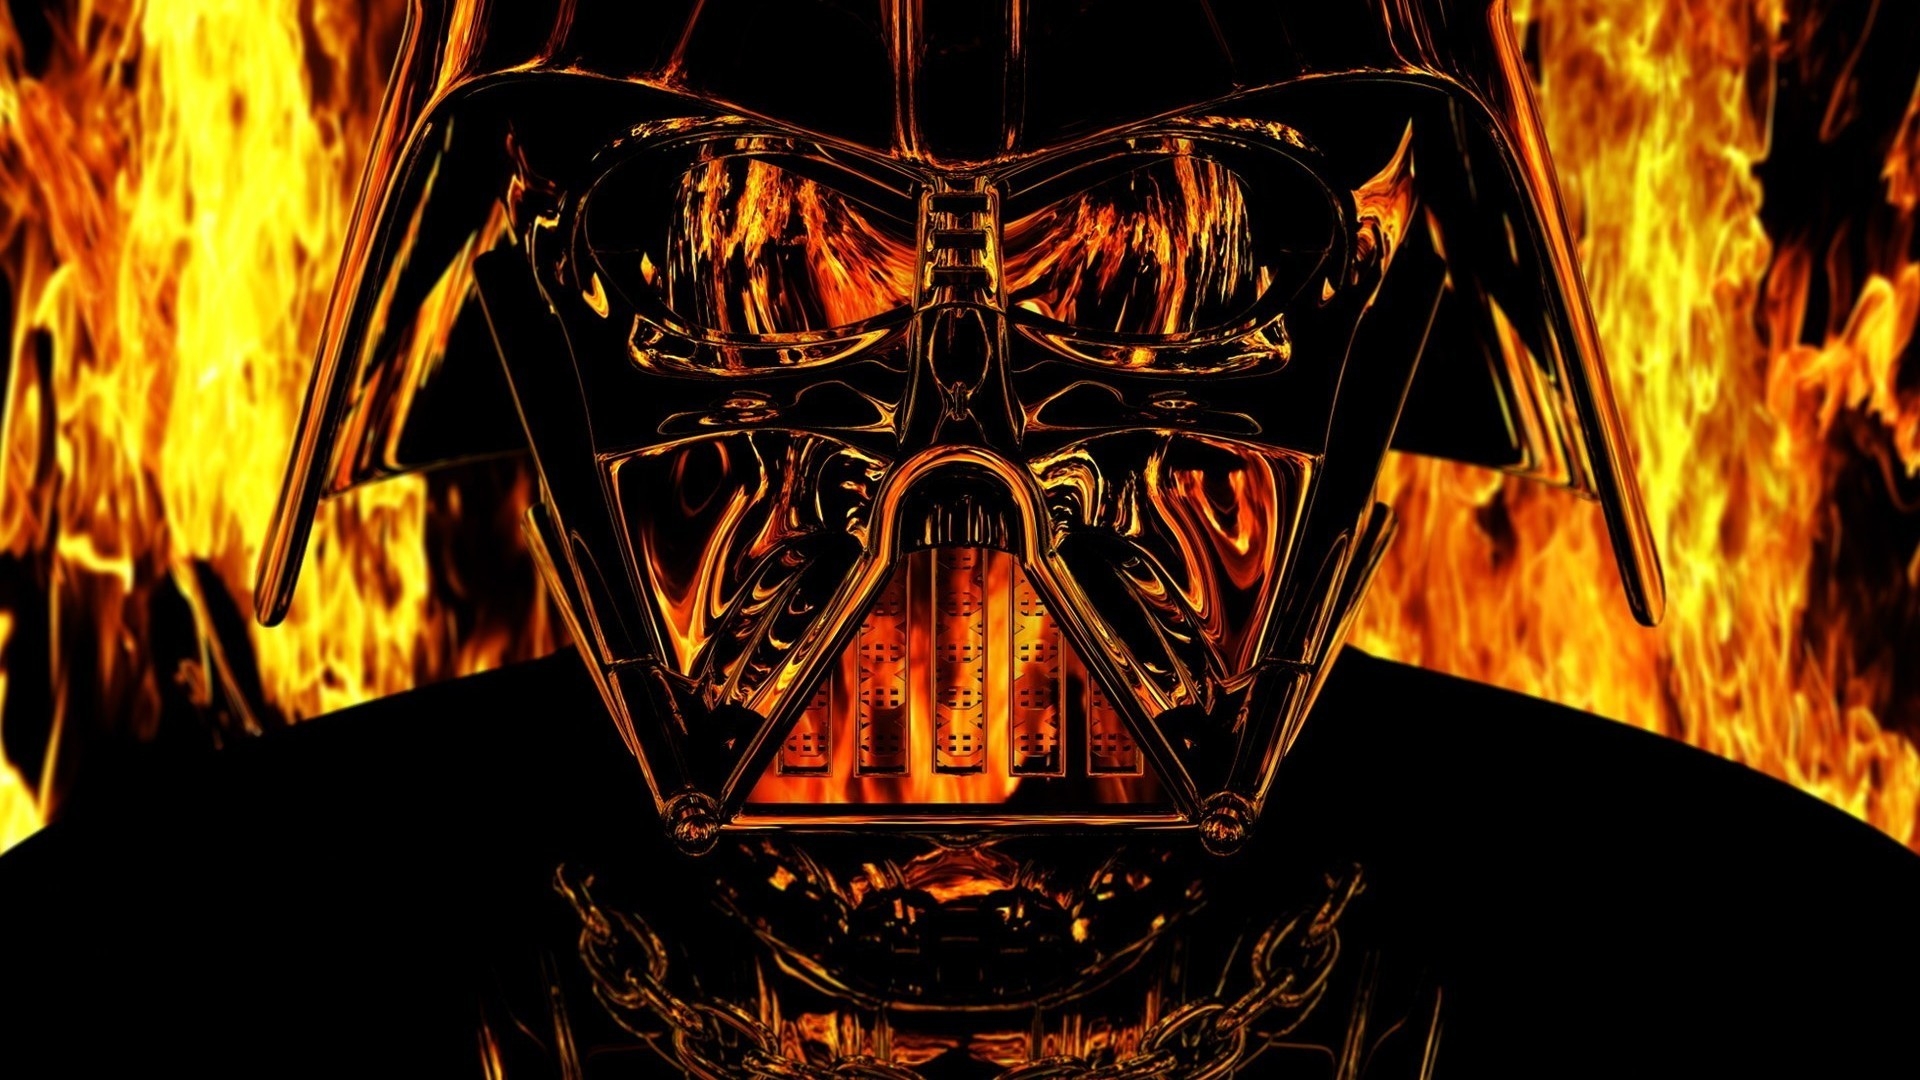 Darth Vader Star Wars for 1920 x 1080 HDTV 1080p resolution